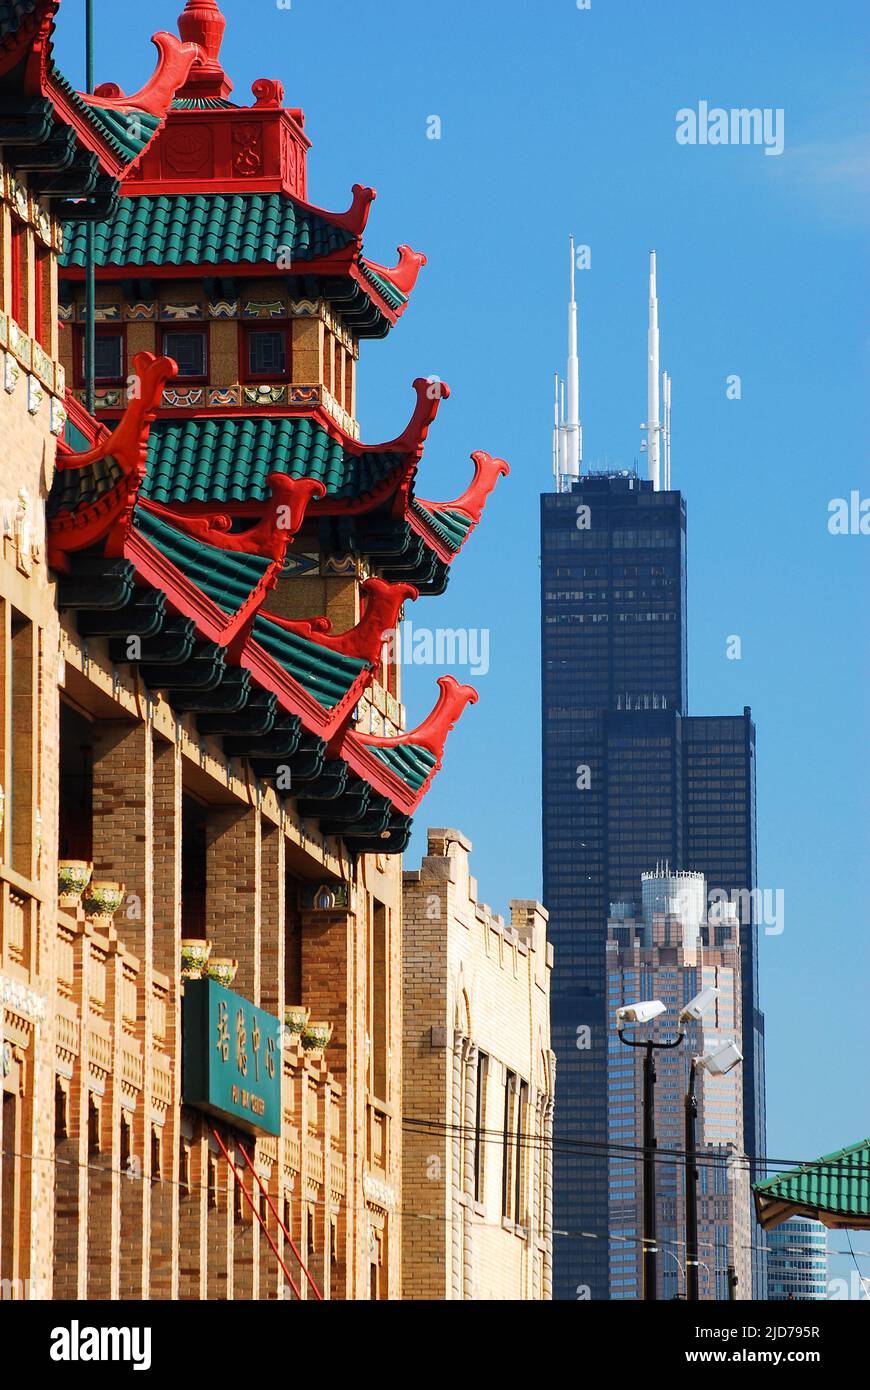 Zwei Kulturen scheinen nebeneinander zu existieren, da ein buddhistischer Tempel in Chinatown dem Willis Tower in Chicago gegenübergestellt wird Stockfoto